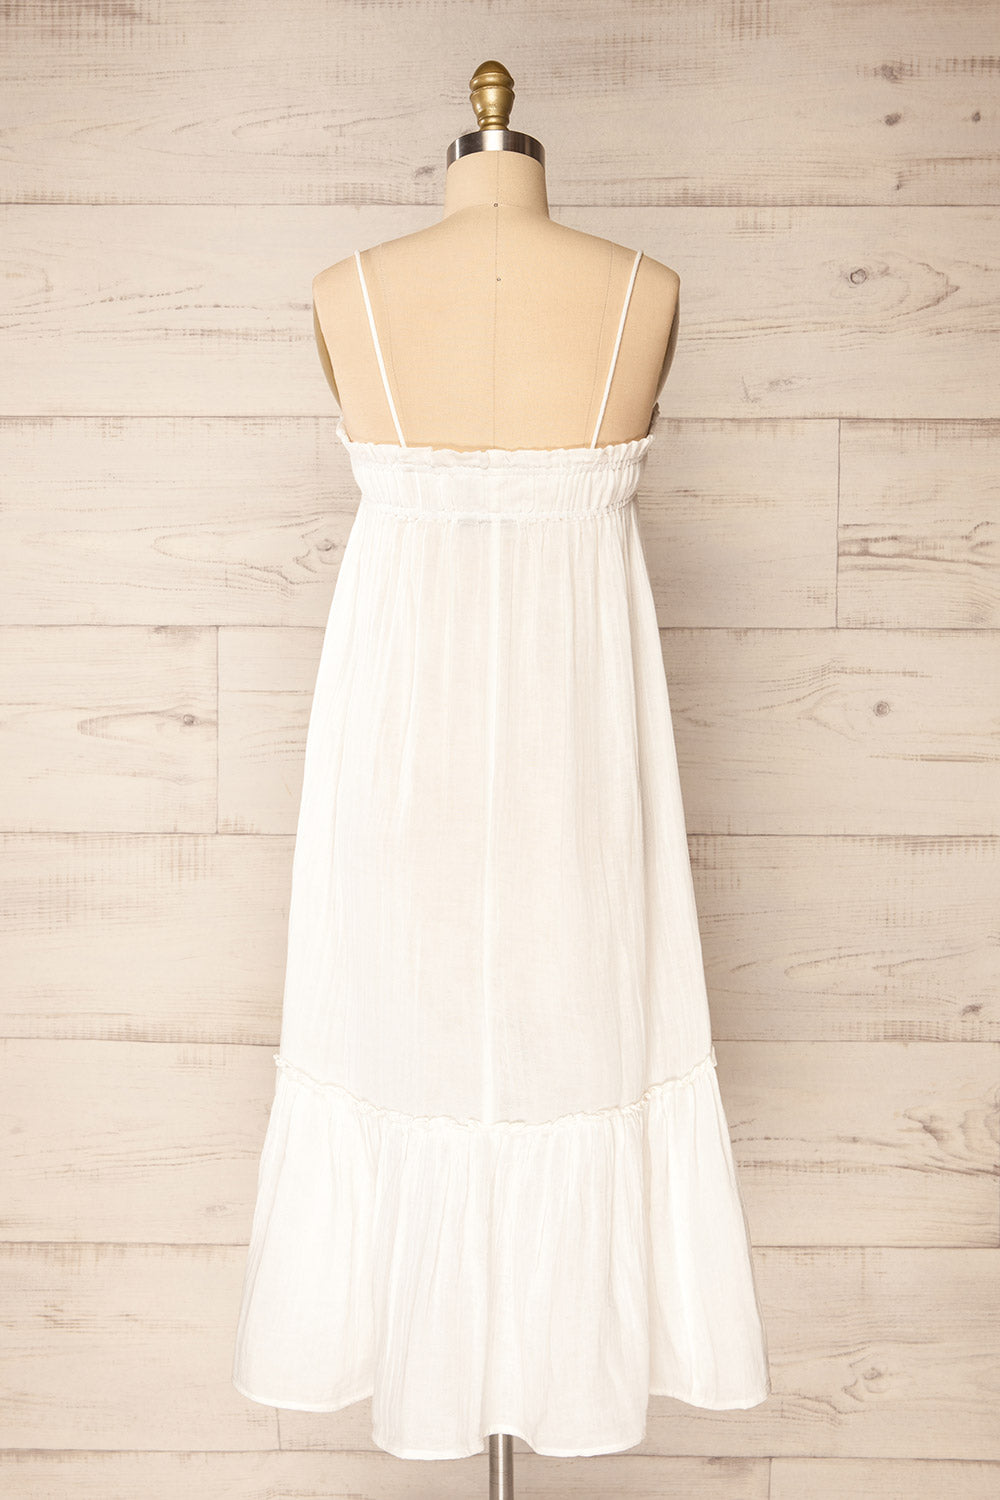 Fannar White A-line Midi Dress | La petite garçonne back view